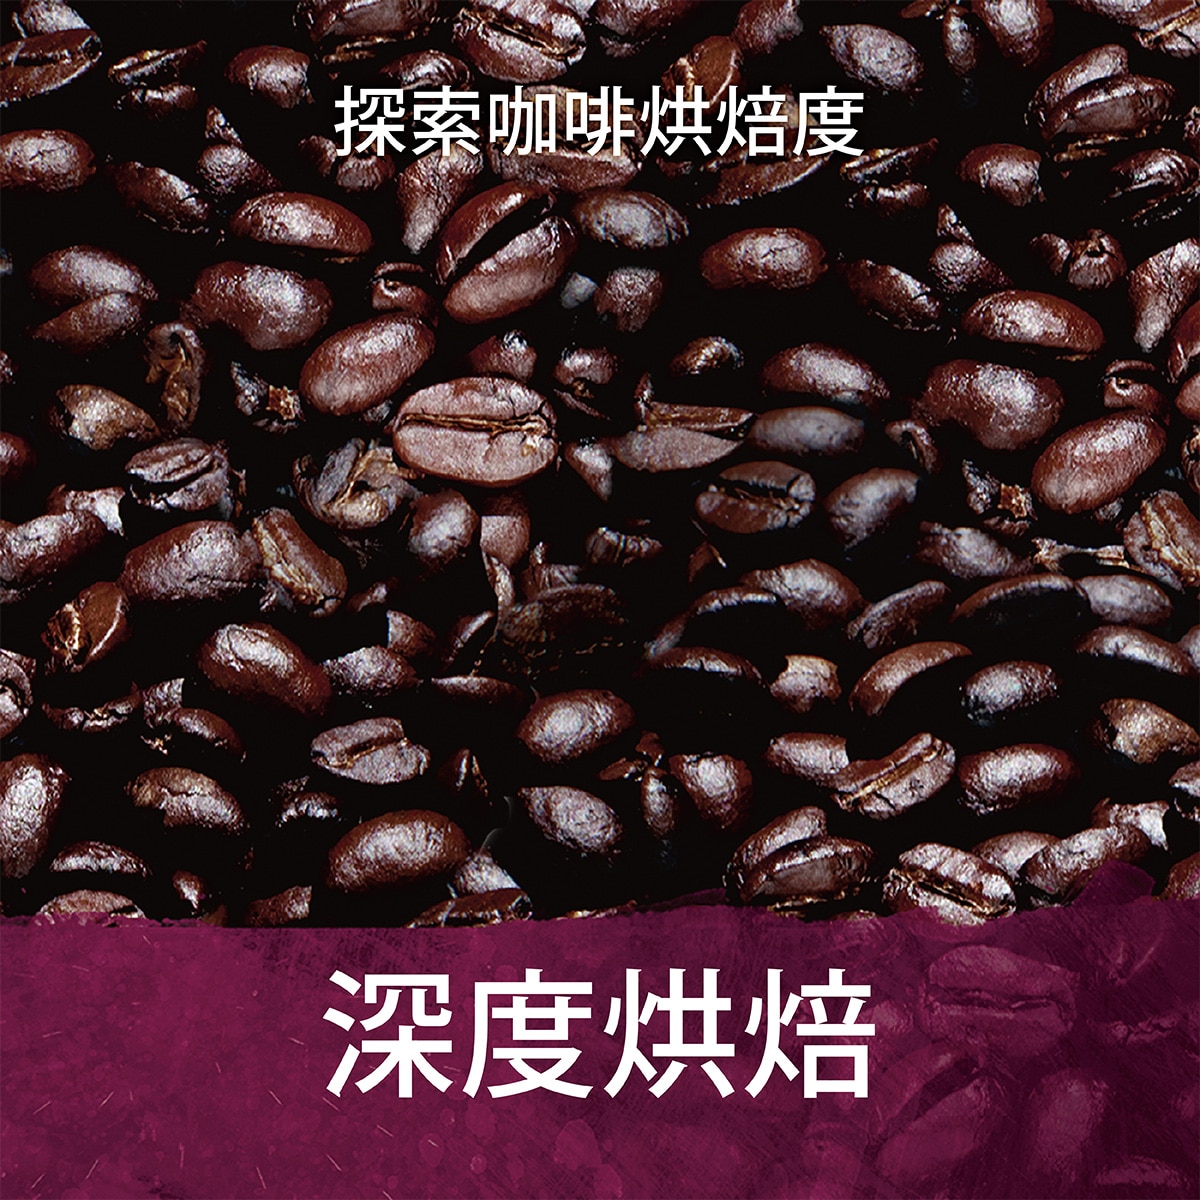 濃烈的咖啡風味。咖啡豆經長時間的烘焙到達美味的極致，可以享受到深厚及似焦糖般的愉悅甜味。